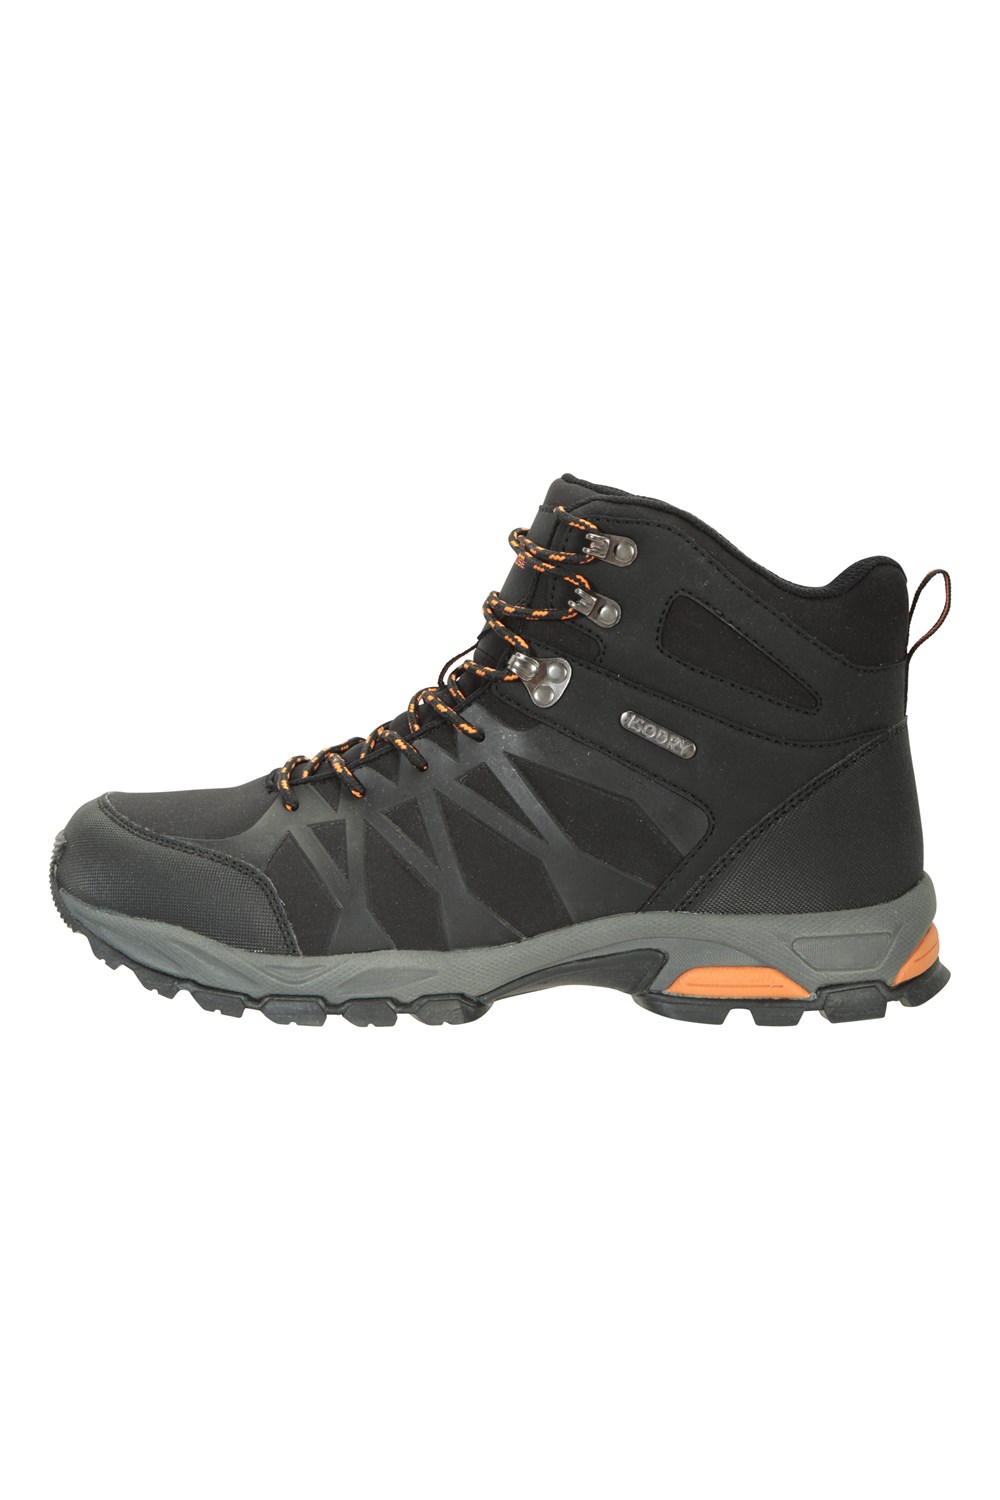 Mountain Warehouse Trekker II Mens Waterproof Softshell Boots Walking ...